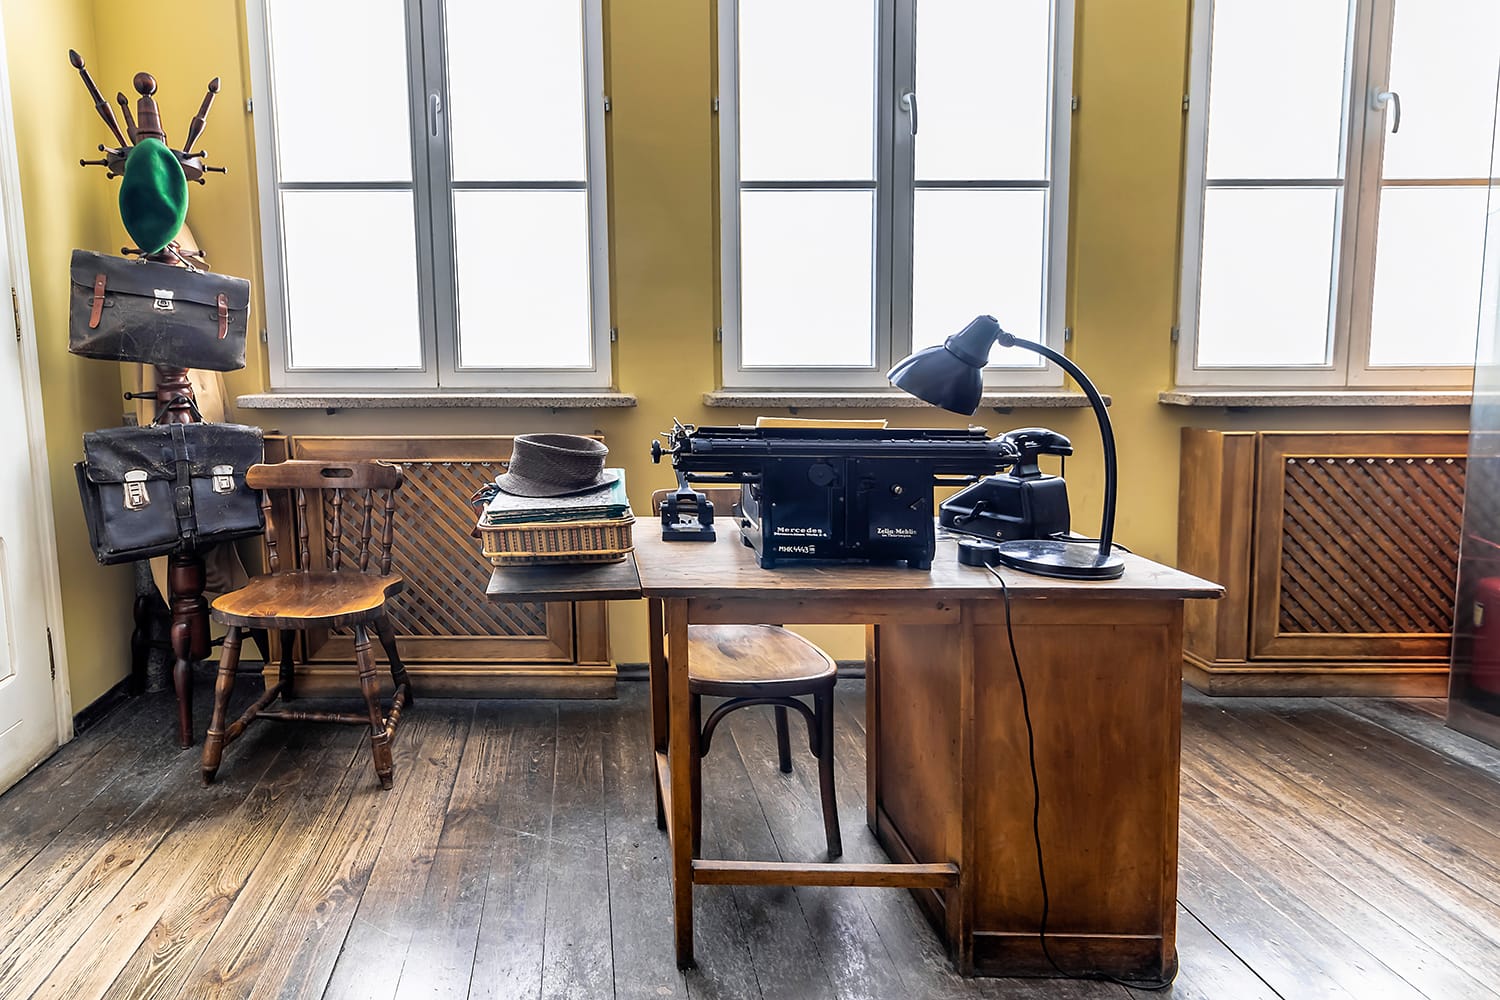 Original office used by Oskar Schindler secretary to write the Oskar Schindler's list. On display in Oskar Schindler's Enamel factory museum in Krakow, Poland